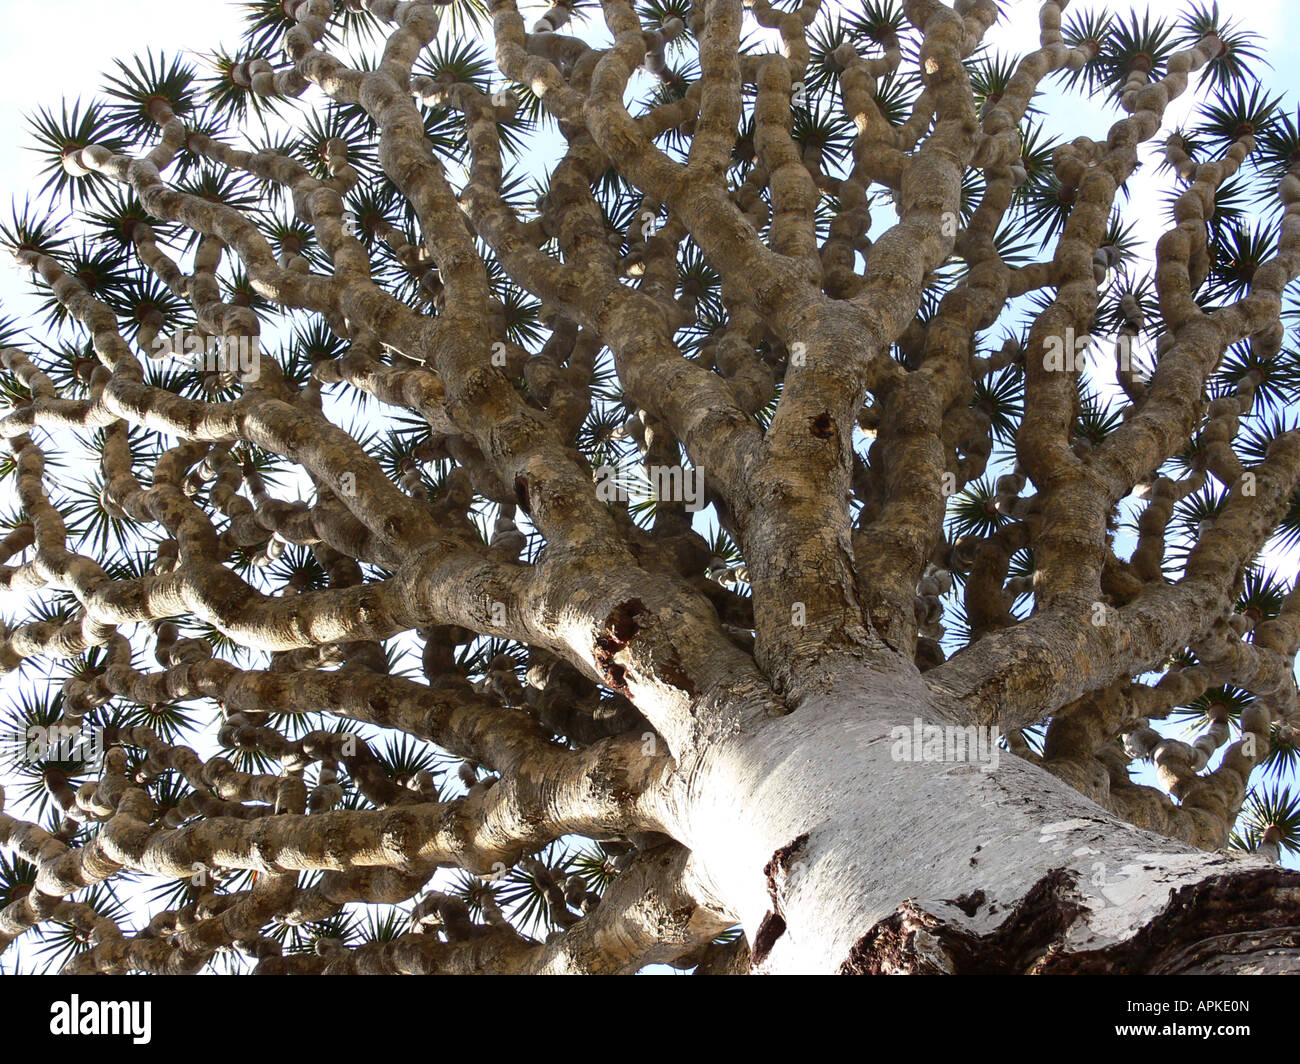 dragon tree (Dracaena cinnabari), single tree in womrs-eye view, Yemen, Socotra Stock Photo